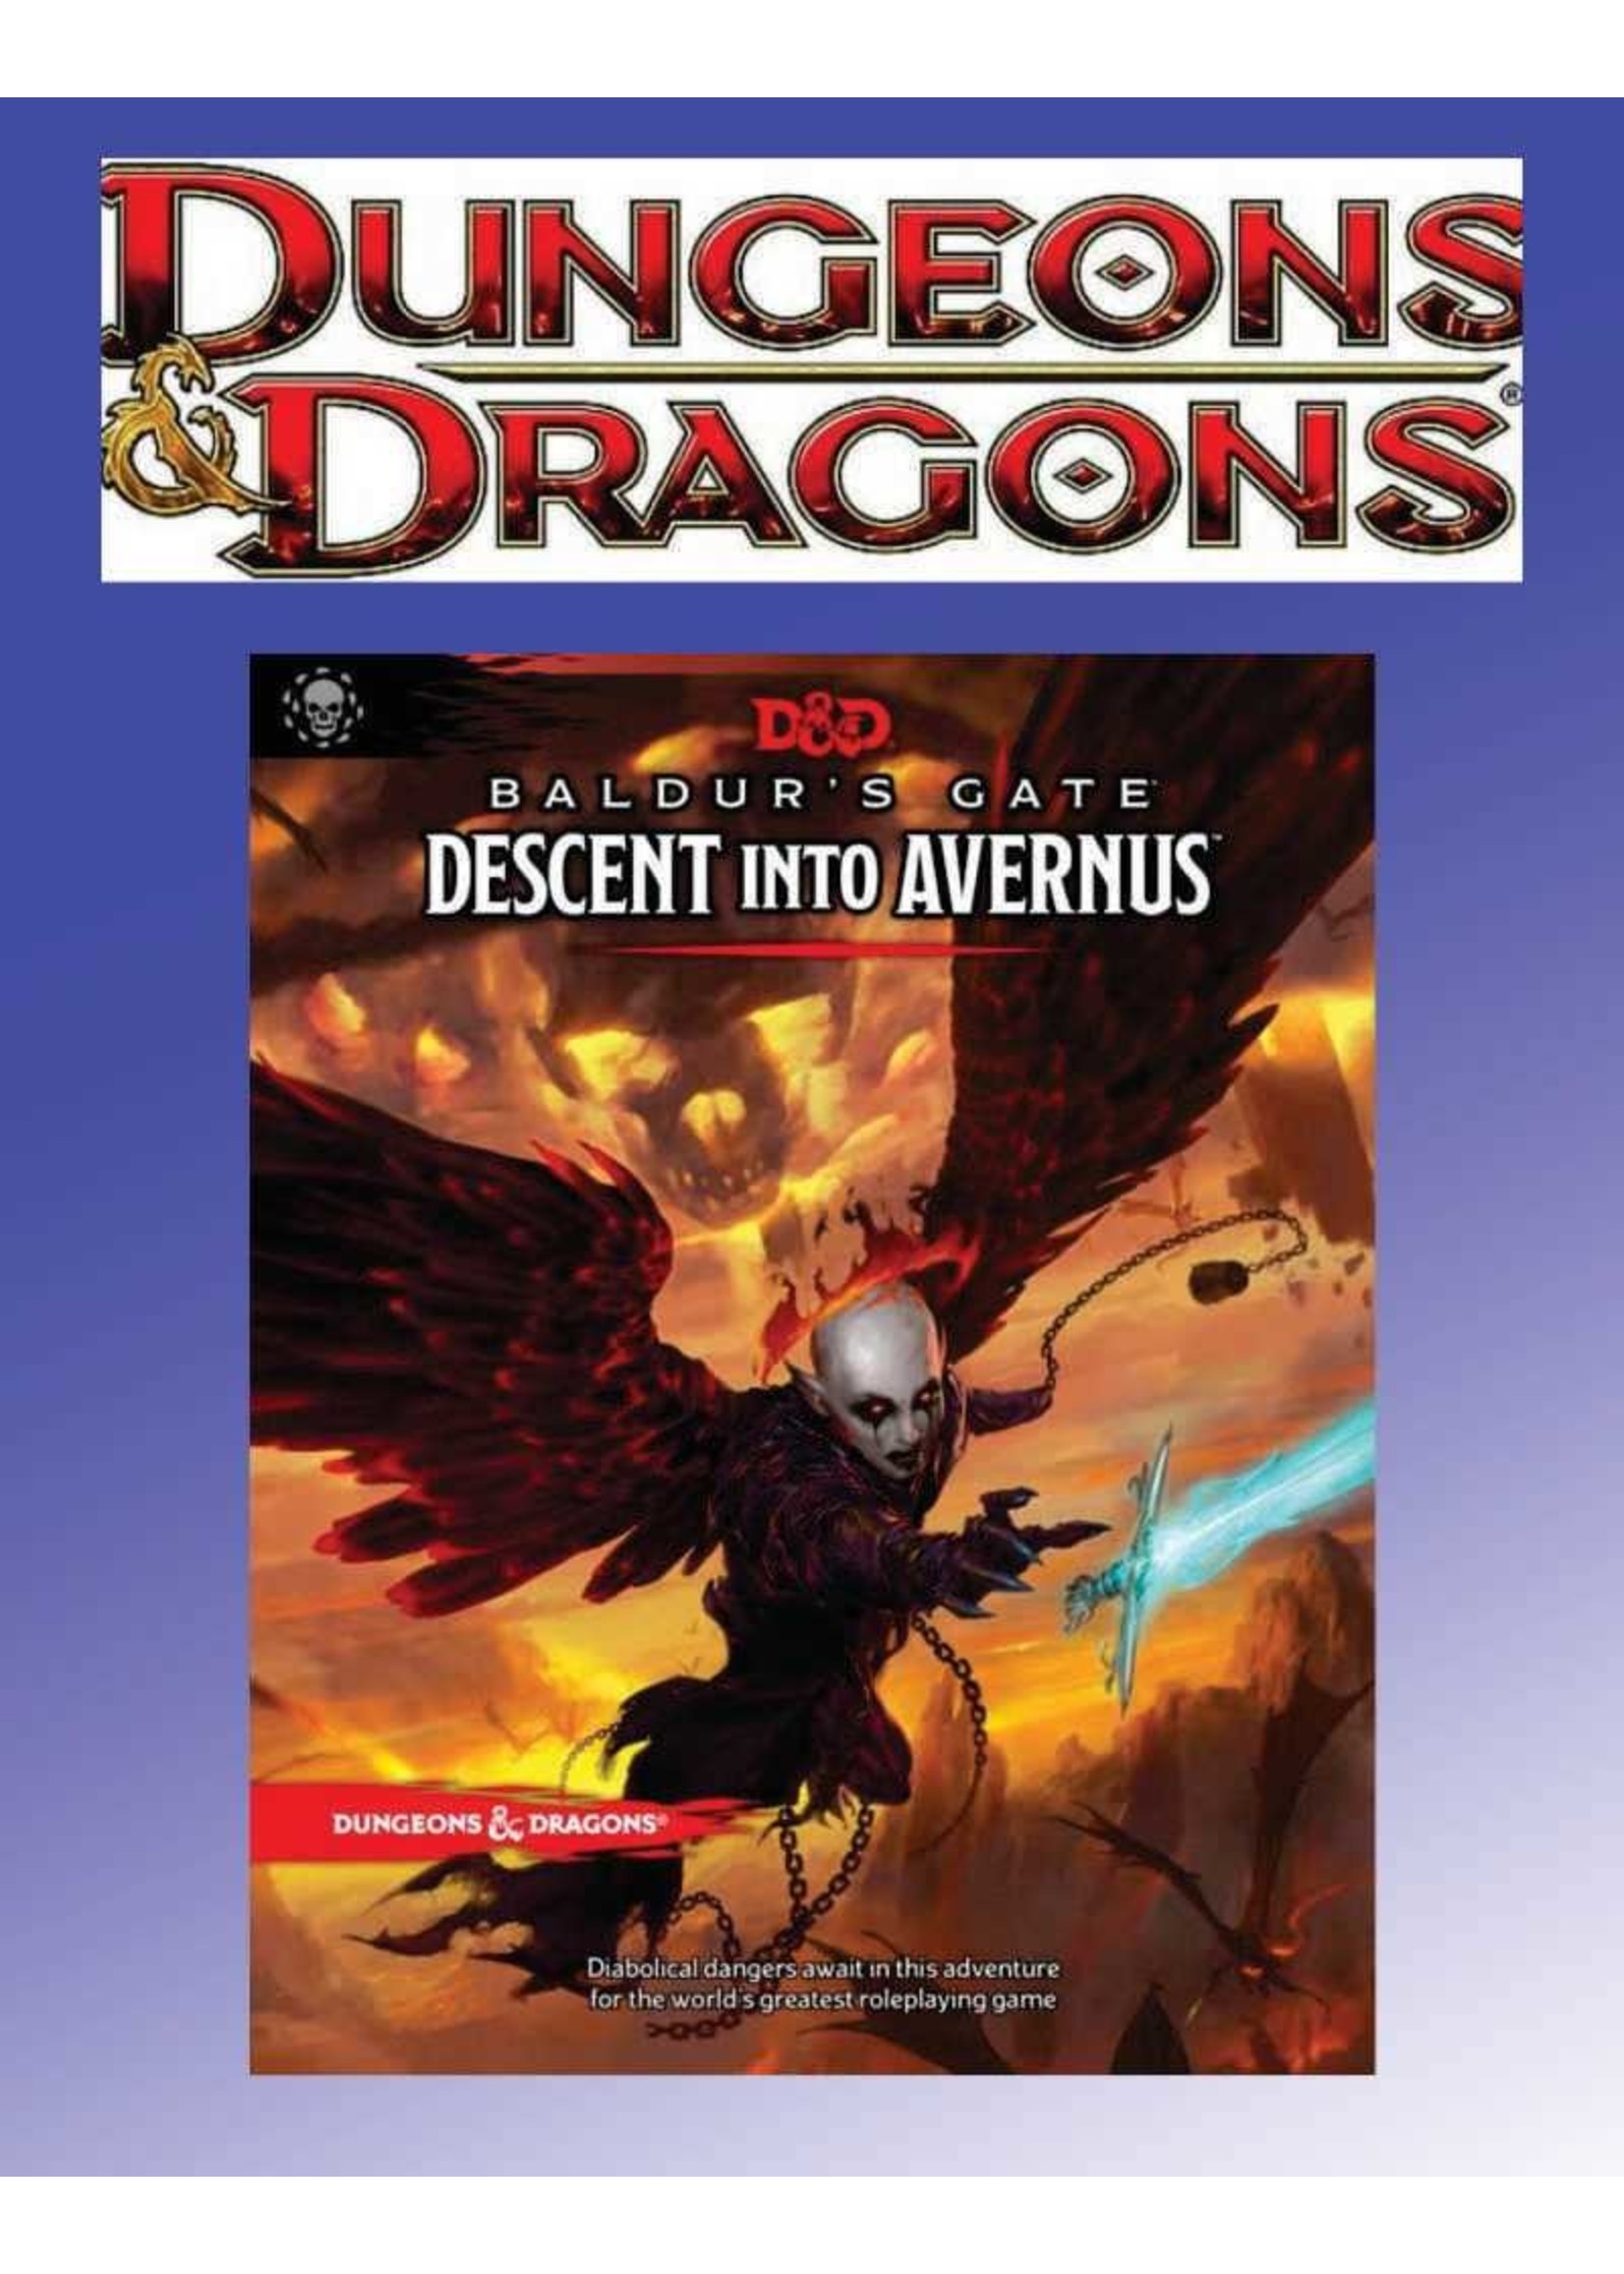 Dungeons and Dragons D&D 5E: Baldur's Gate Descent into Avernus